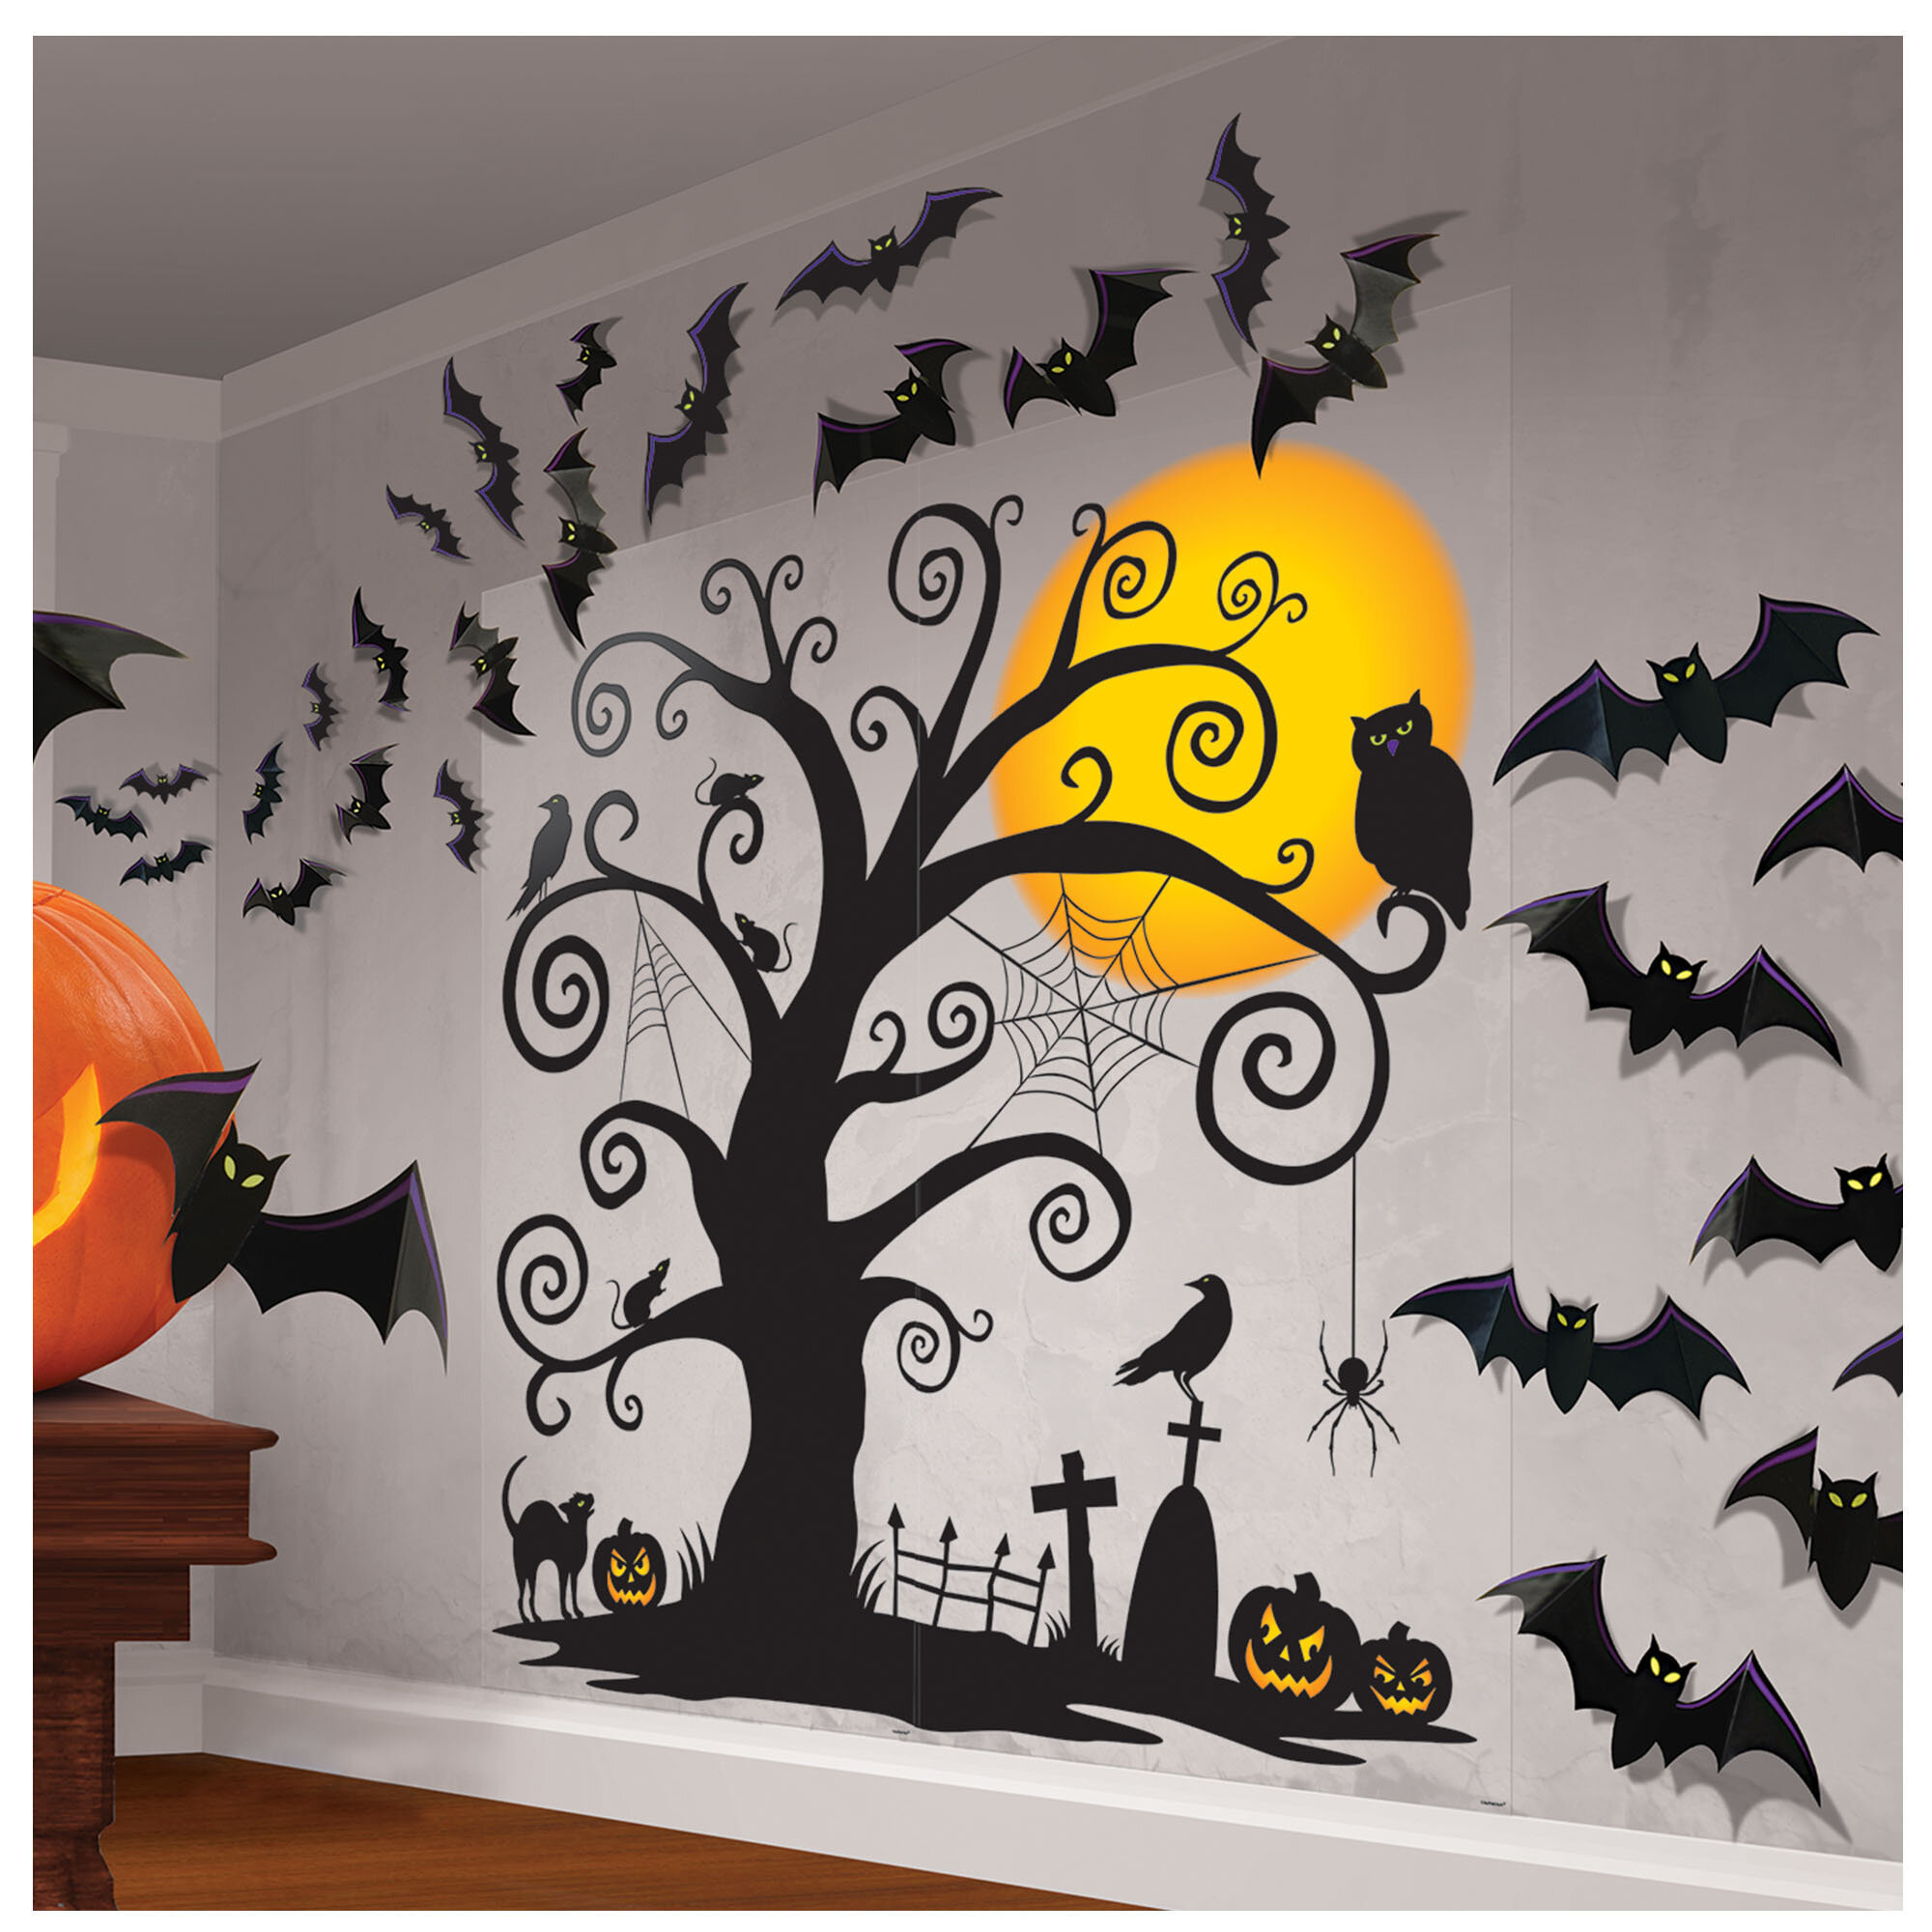 Spooky Halloween Wall Scene Stickers Vinyl Decal Door Window Decoration 5 sizes 